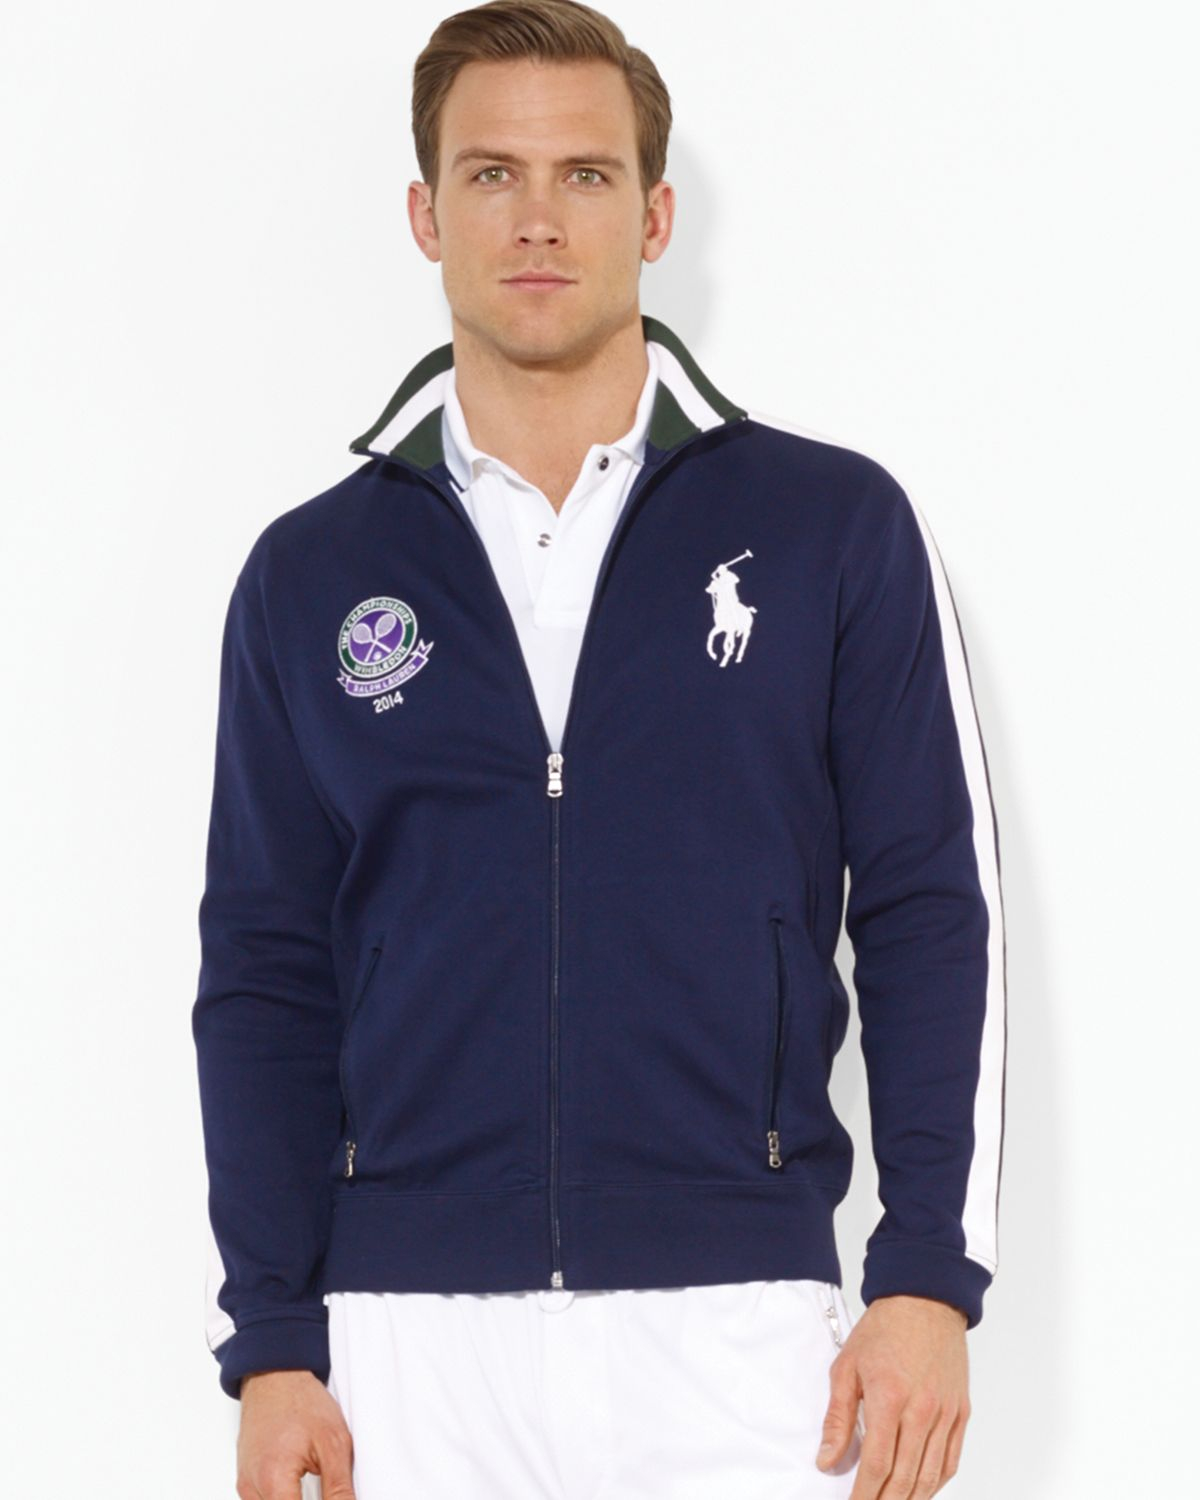 Wimbledon Jacket / Polo Ralph Lauren Wimbledon Collection Windbreaker